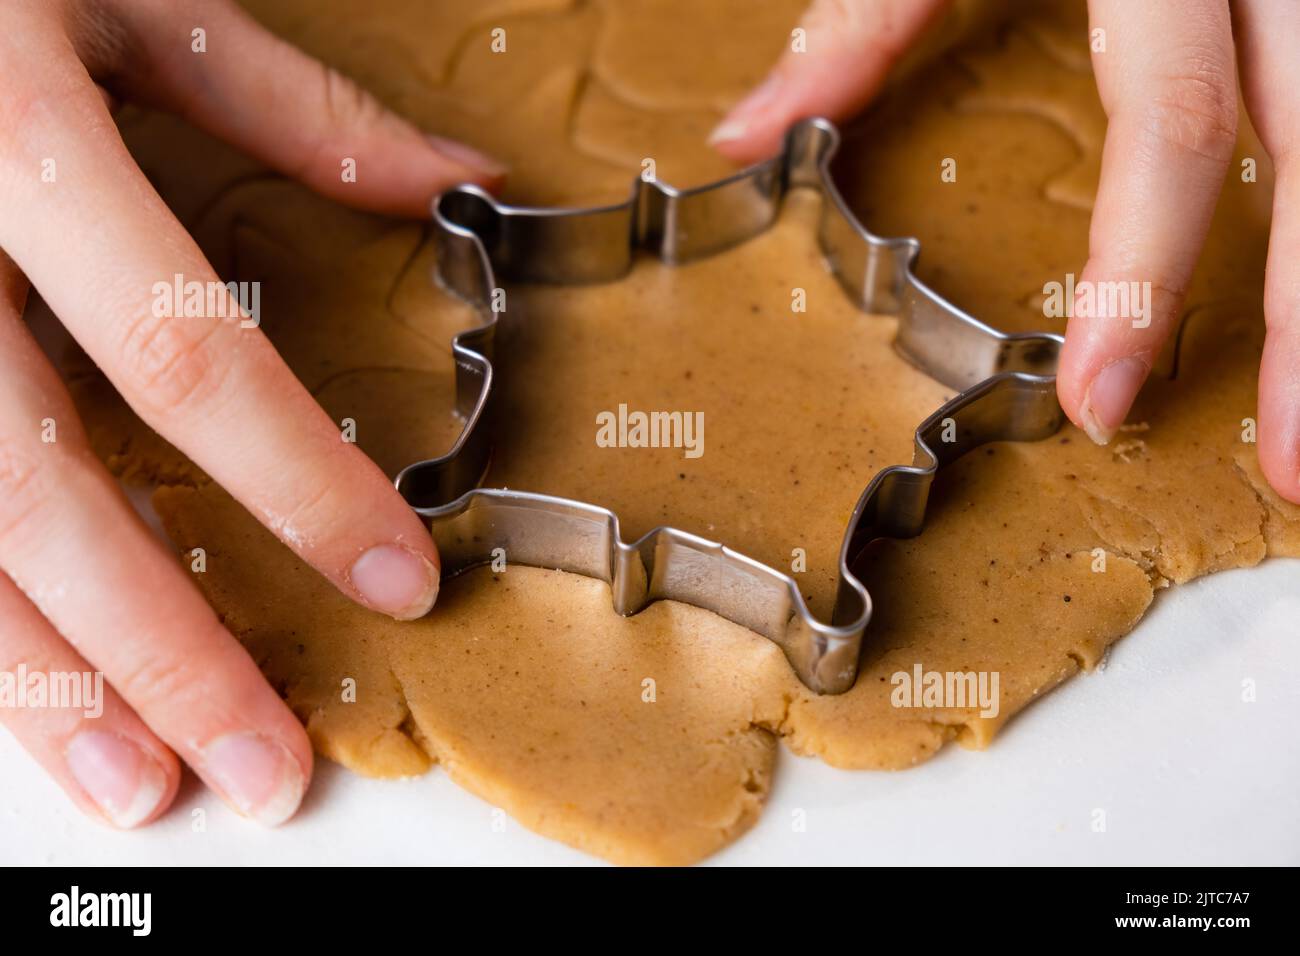 Nahaufnahme Frau Hände schneiden Cookies mit Metallform aus dem Mürbeteig. Ein Metall bildet sich in Form von Schneeflocken zur Herstellung von Lebkuchen zu Weihnachten. Stockfoto